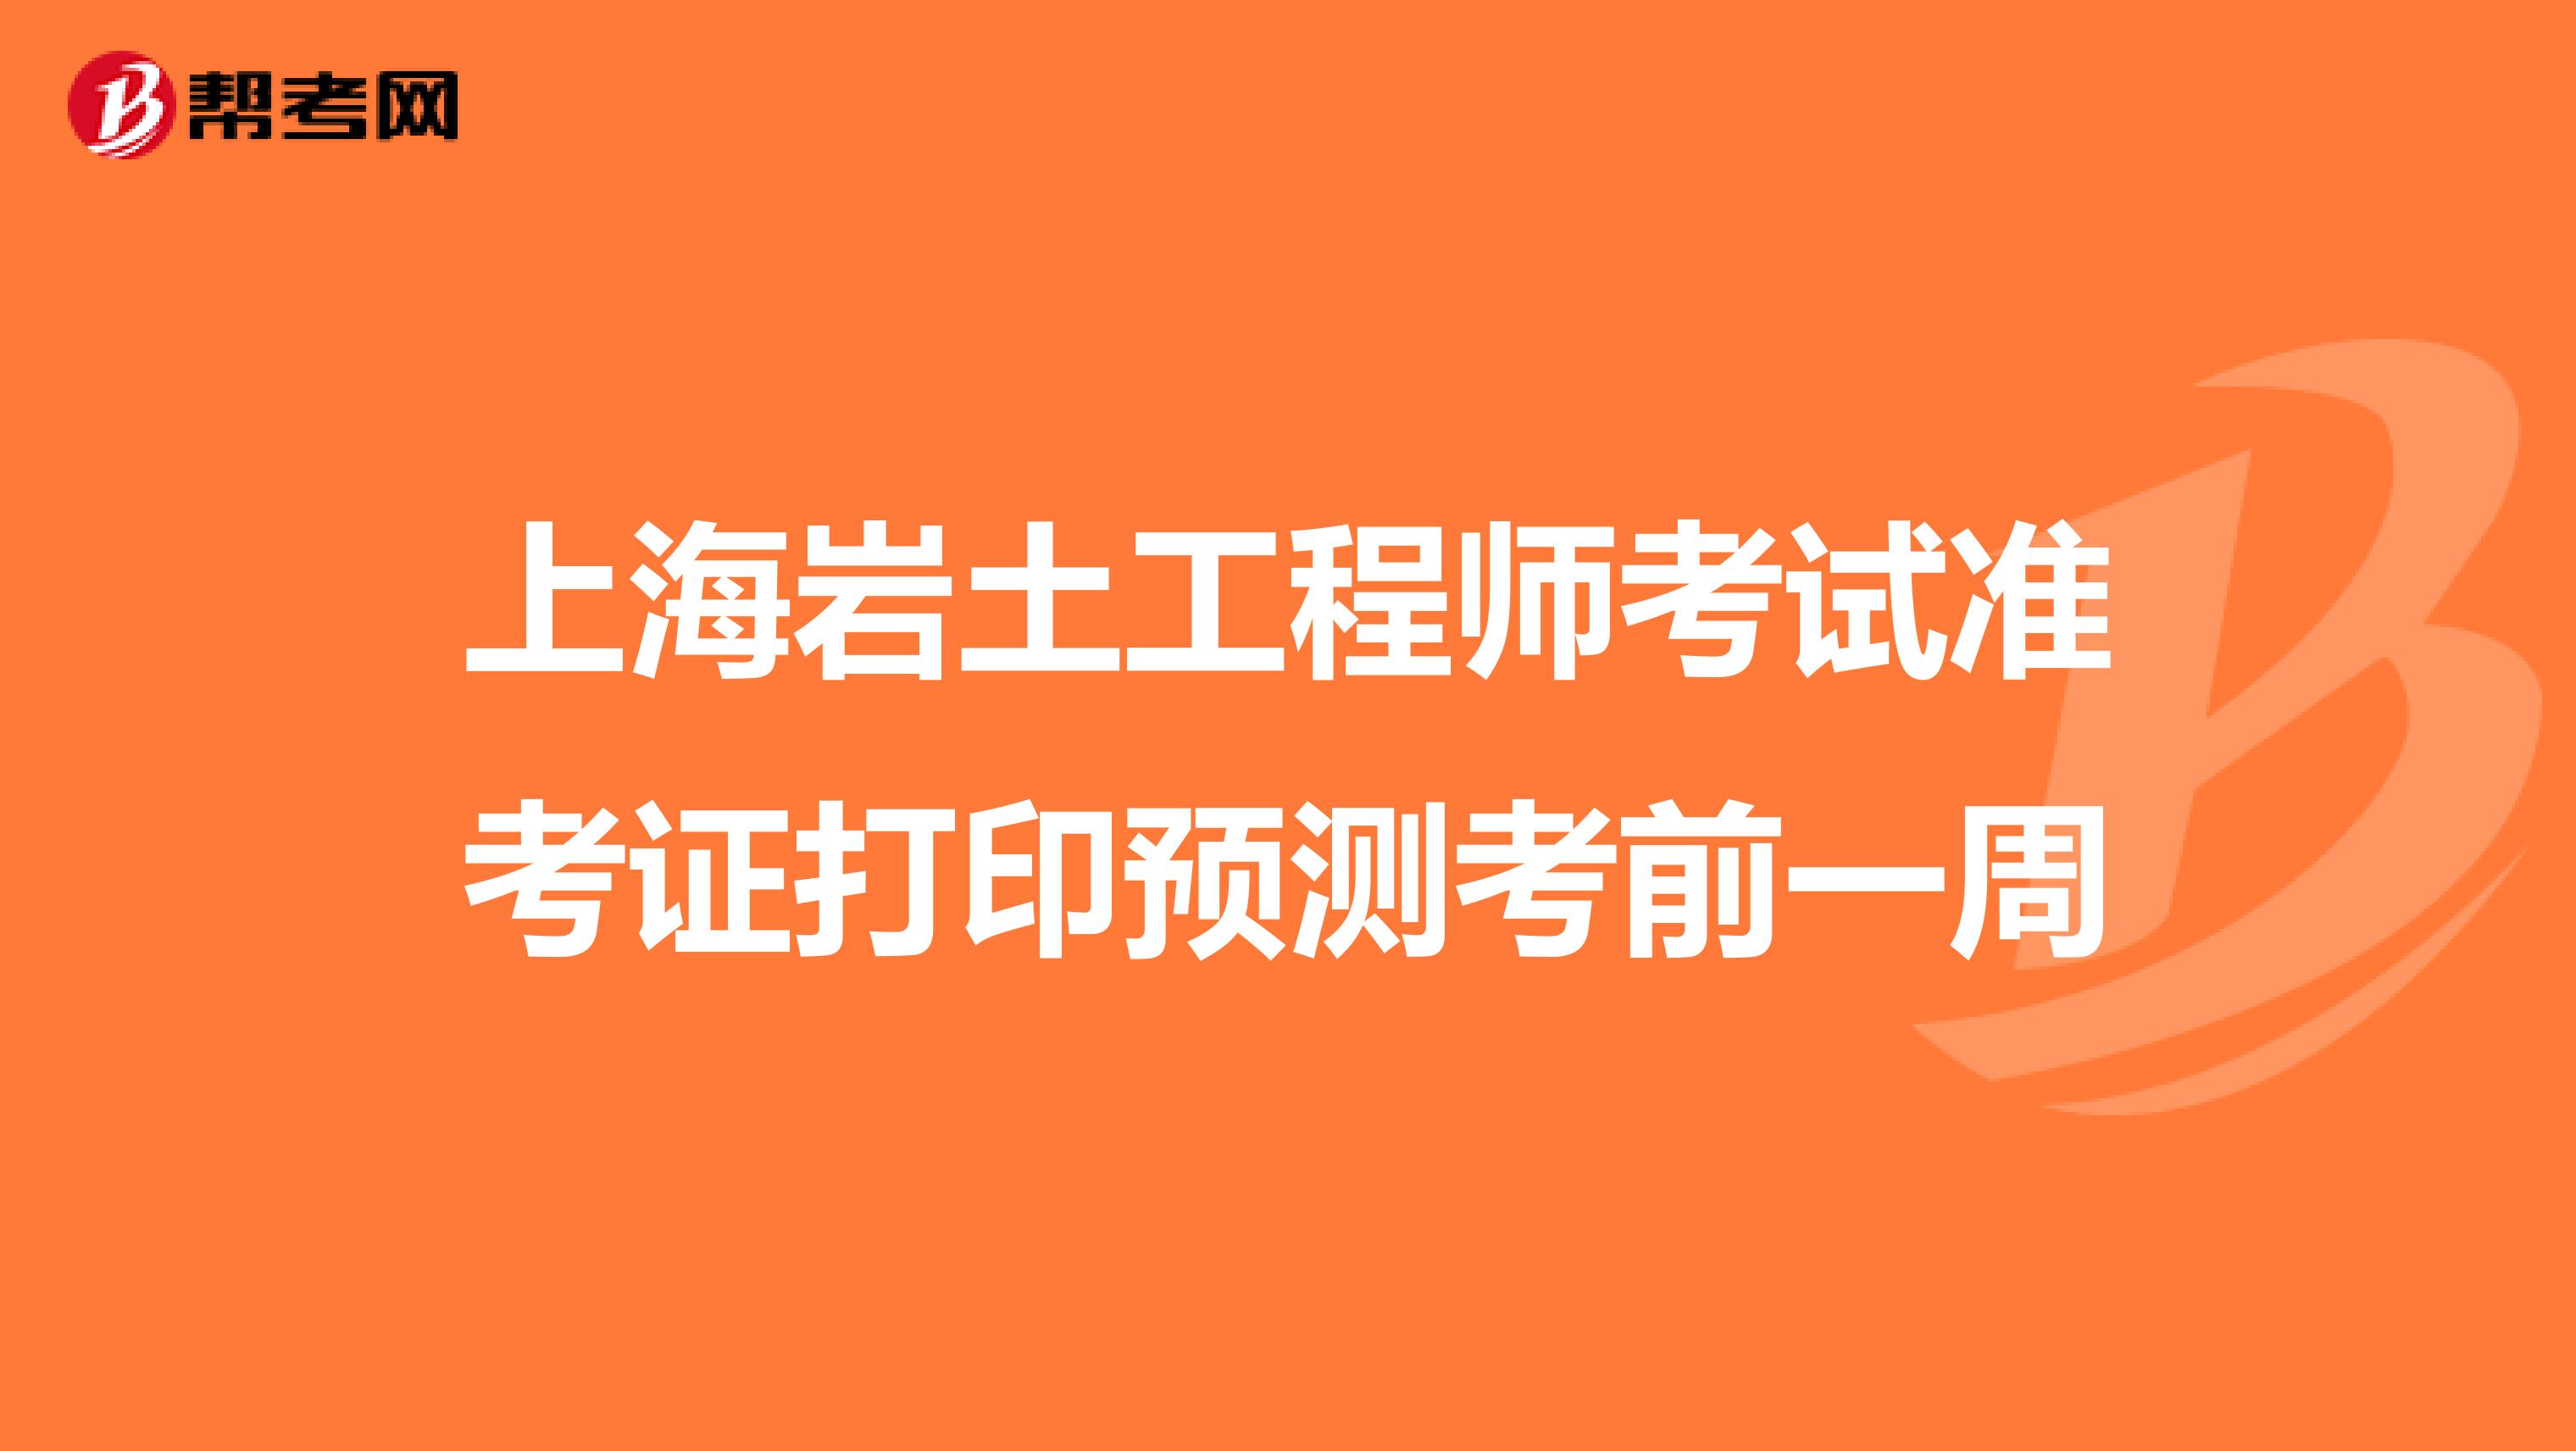 上海岩土工程师考试准考证打印预测考前一周